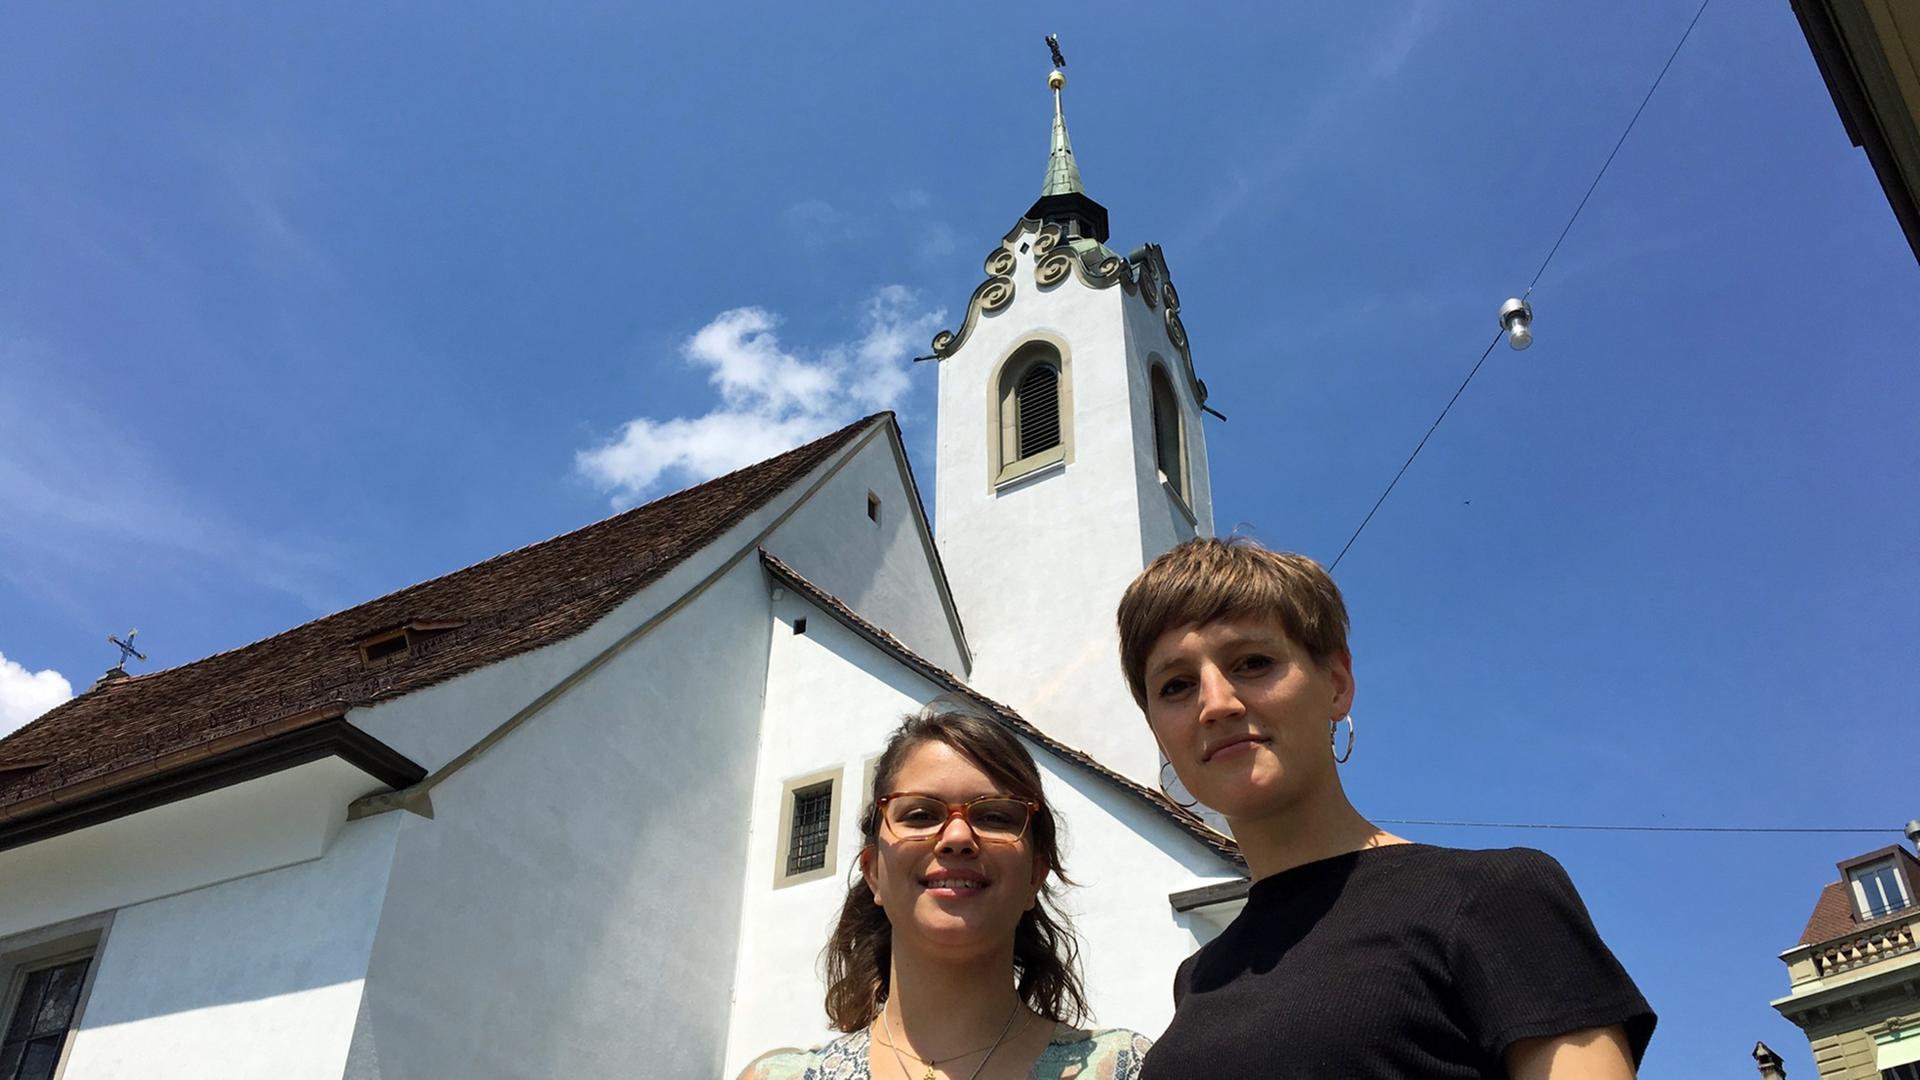 Die Künstlerinnen Klarissa Flückiger (l.) und Mahtola Wittmer vor der St. Peters-Kapelle in Luzern